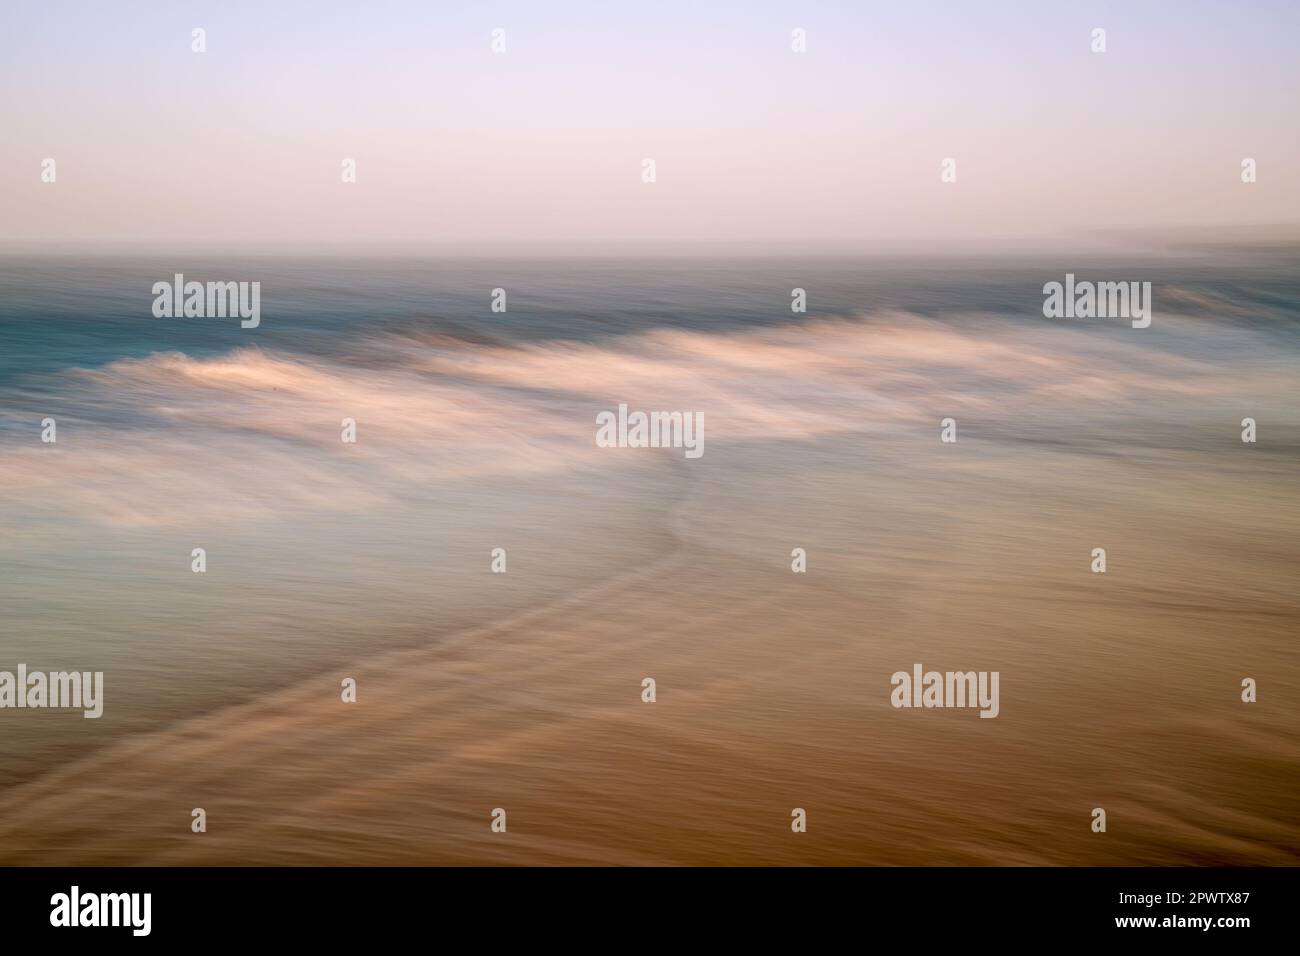 Abstraktes künstlerisches Bild der Strandszene mit intentional Camera Movement (ICM). Bewegungsunschärfe erzeugt traumhafte Kunst Stockfoto